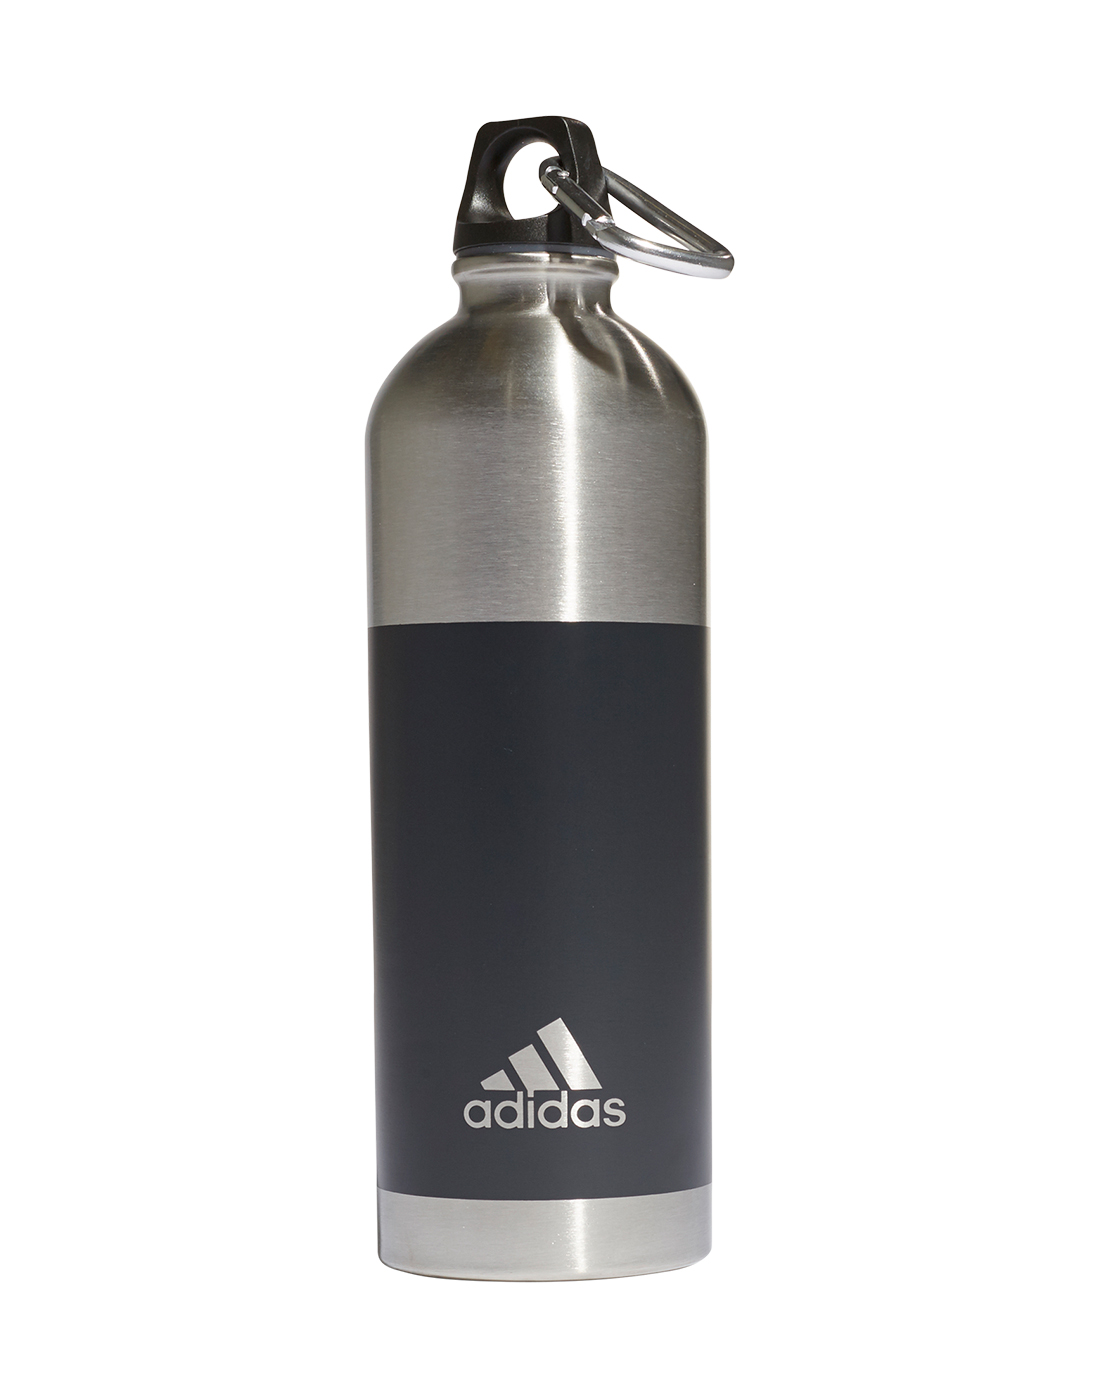 adidas water bottle steel